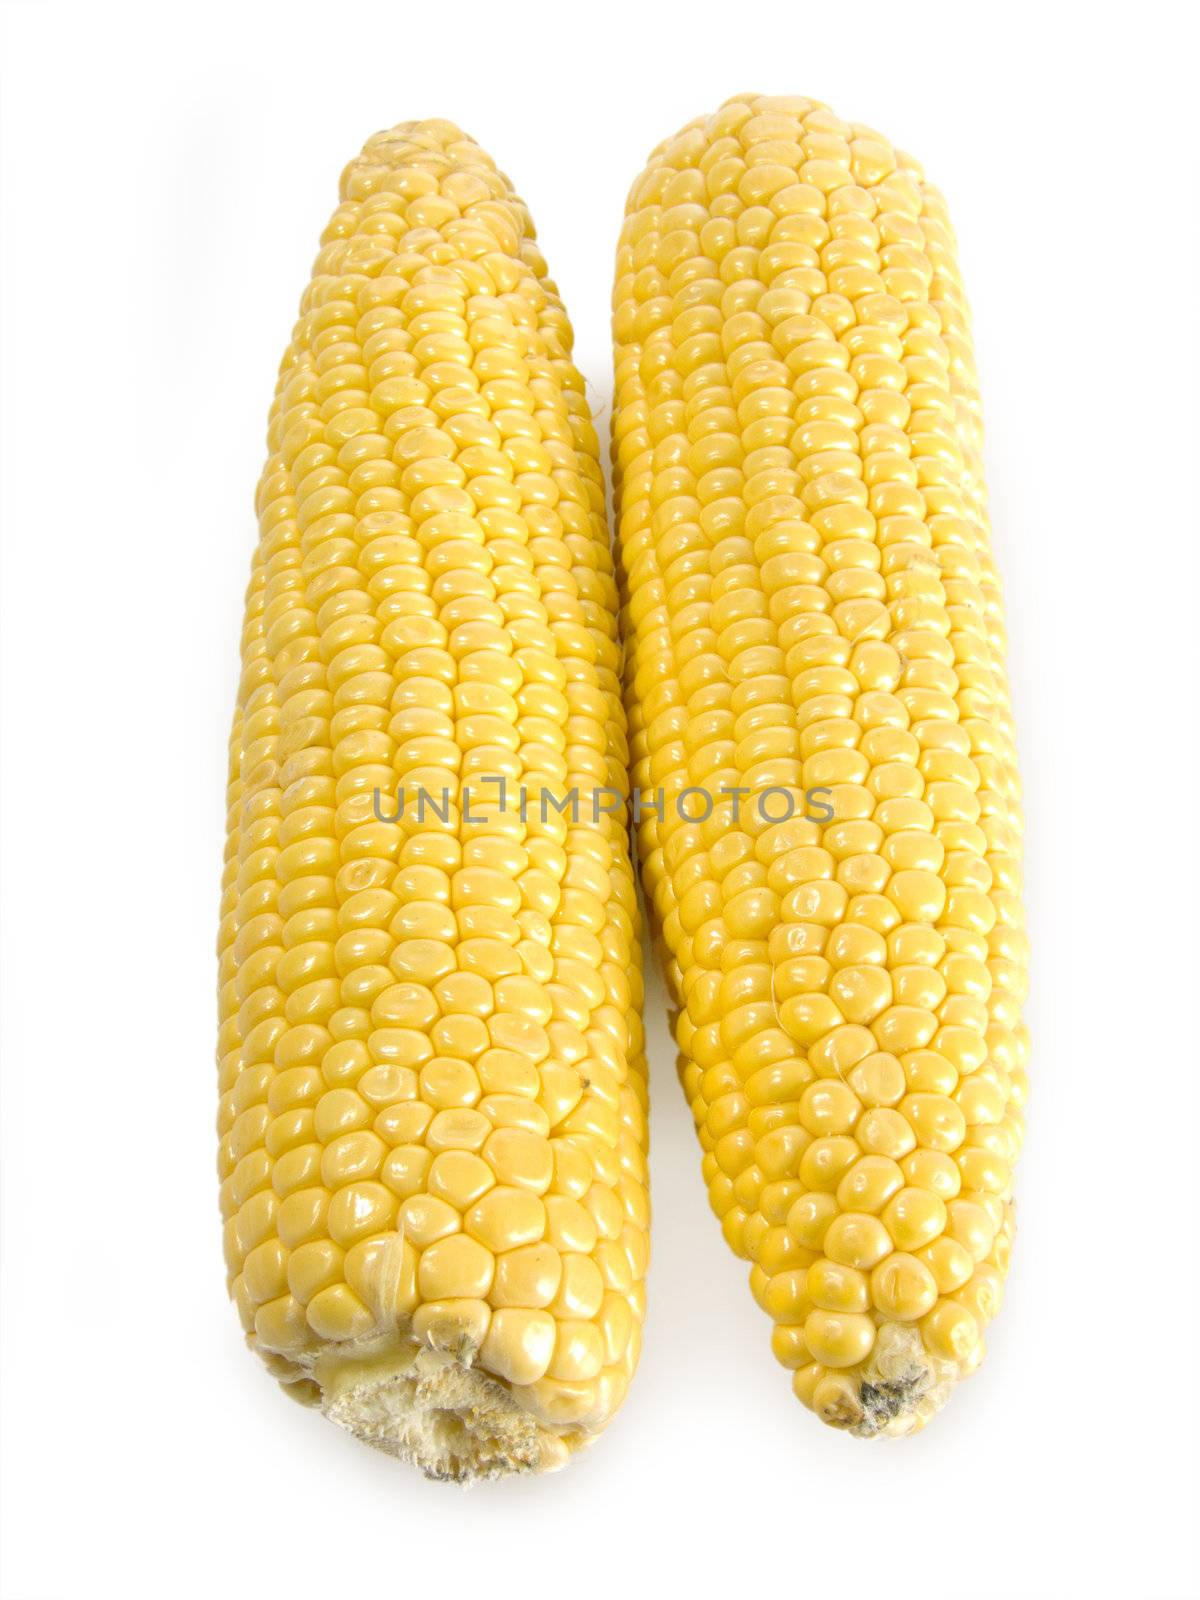 Corn by Teamarbeit